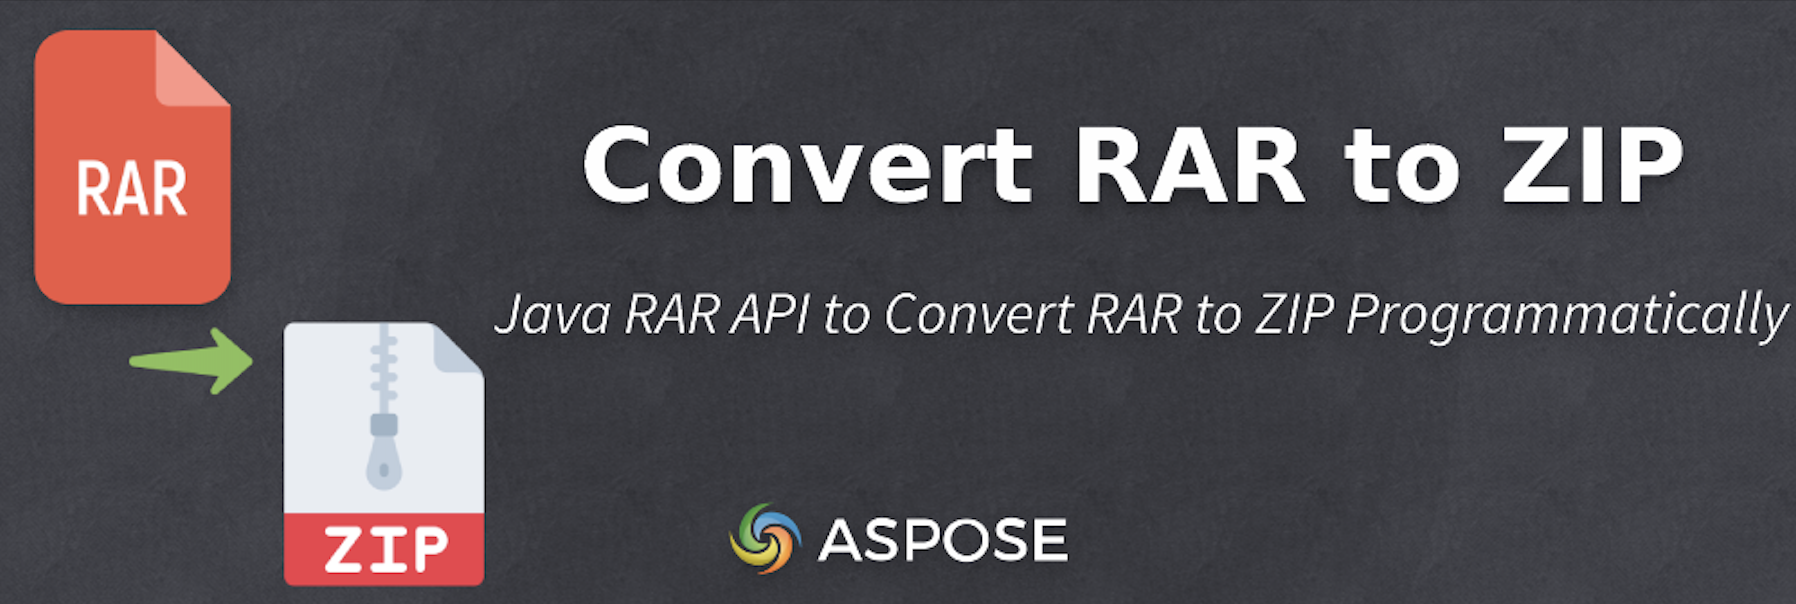 使用 Java 将 RAR 转换为 ZIP - Java RAR API